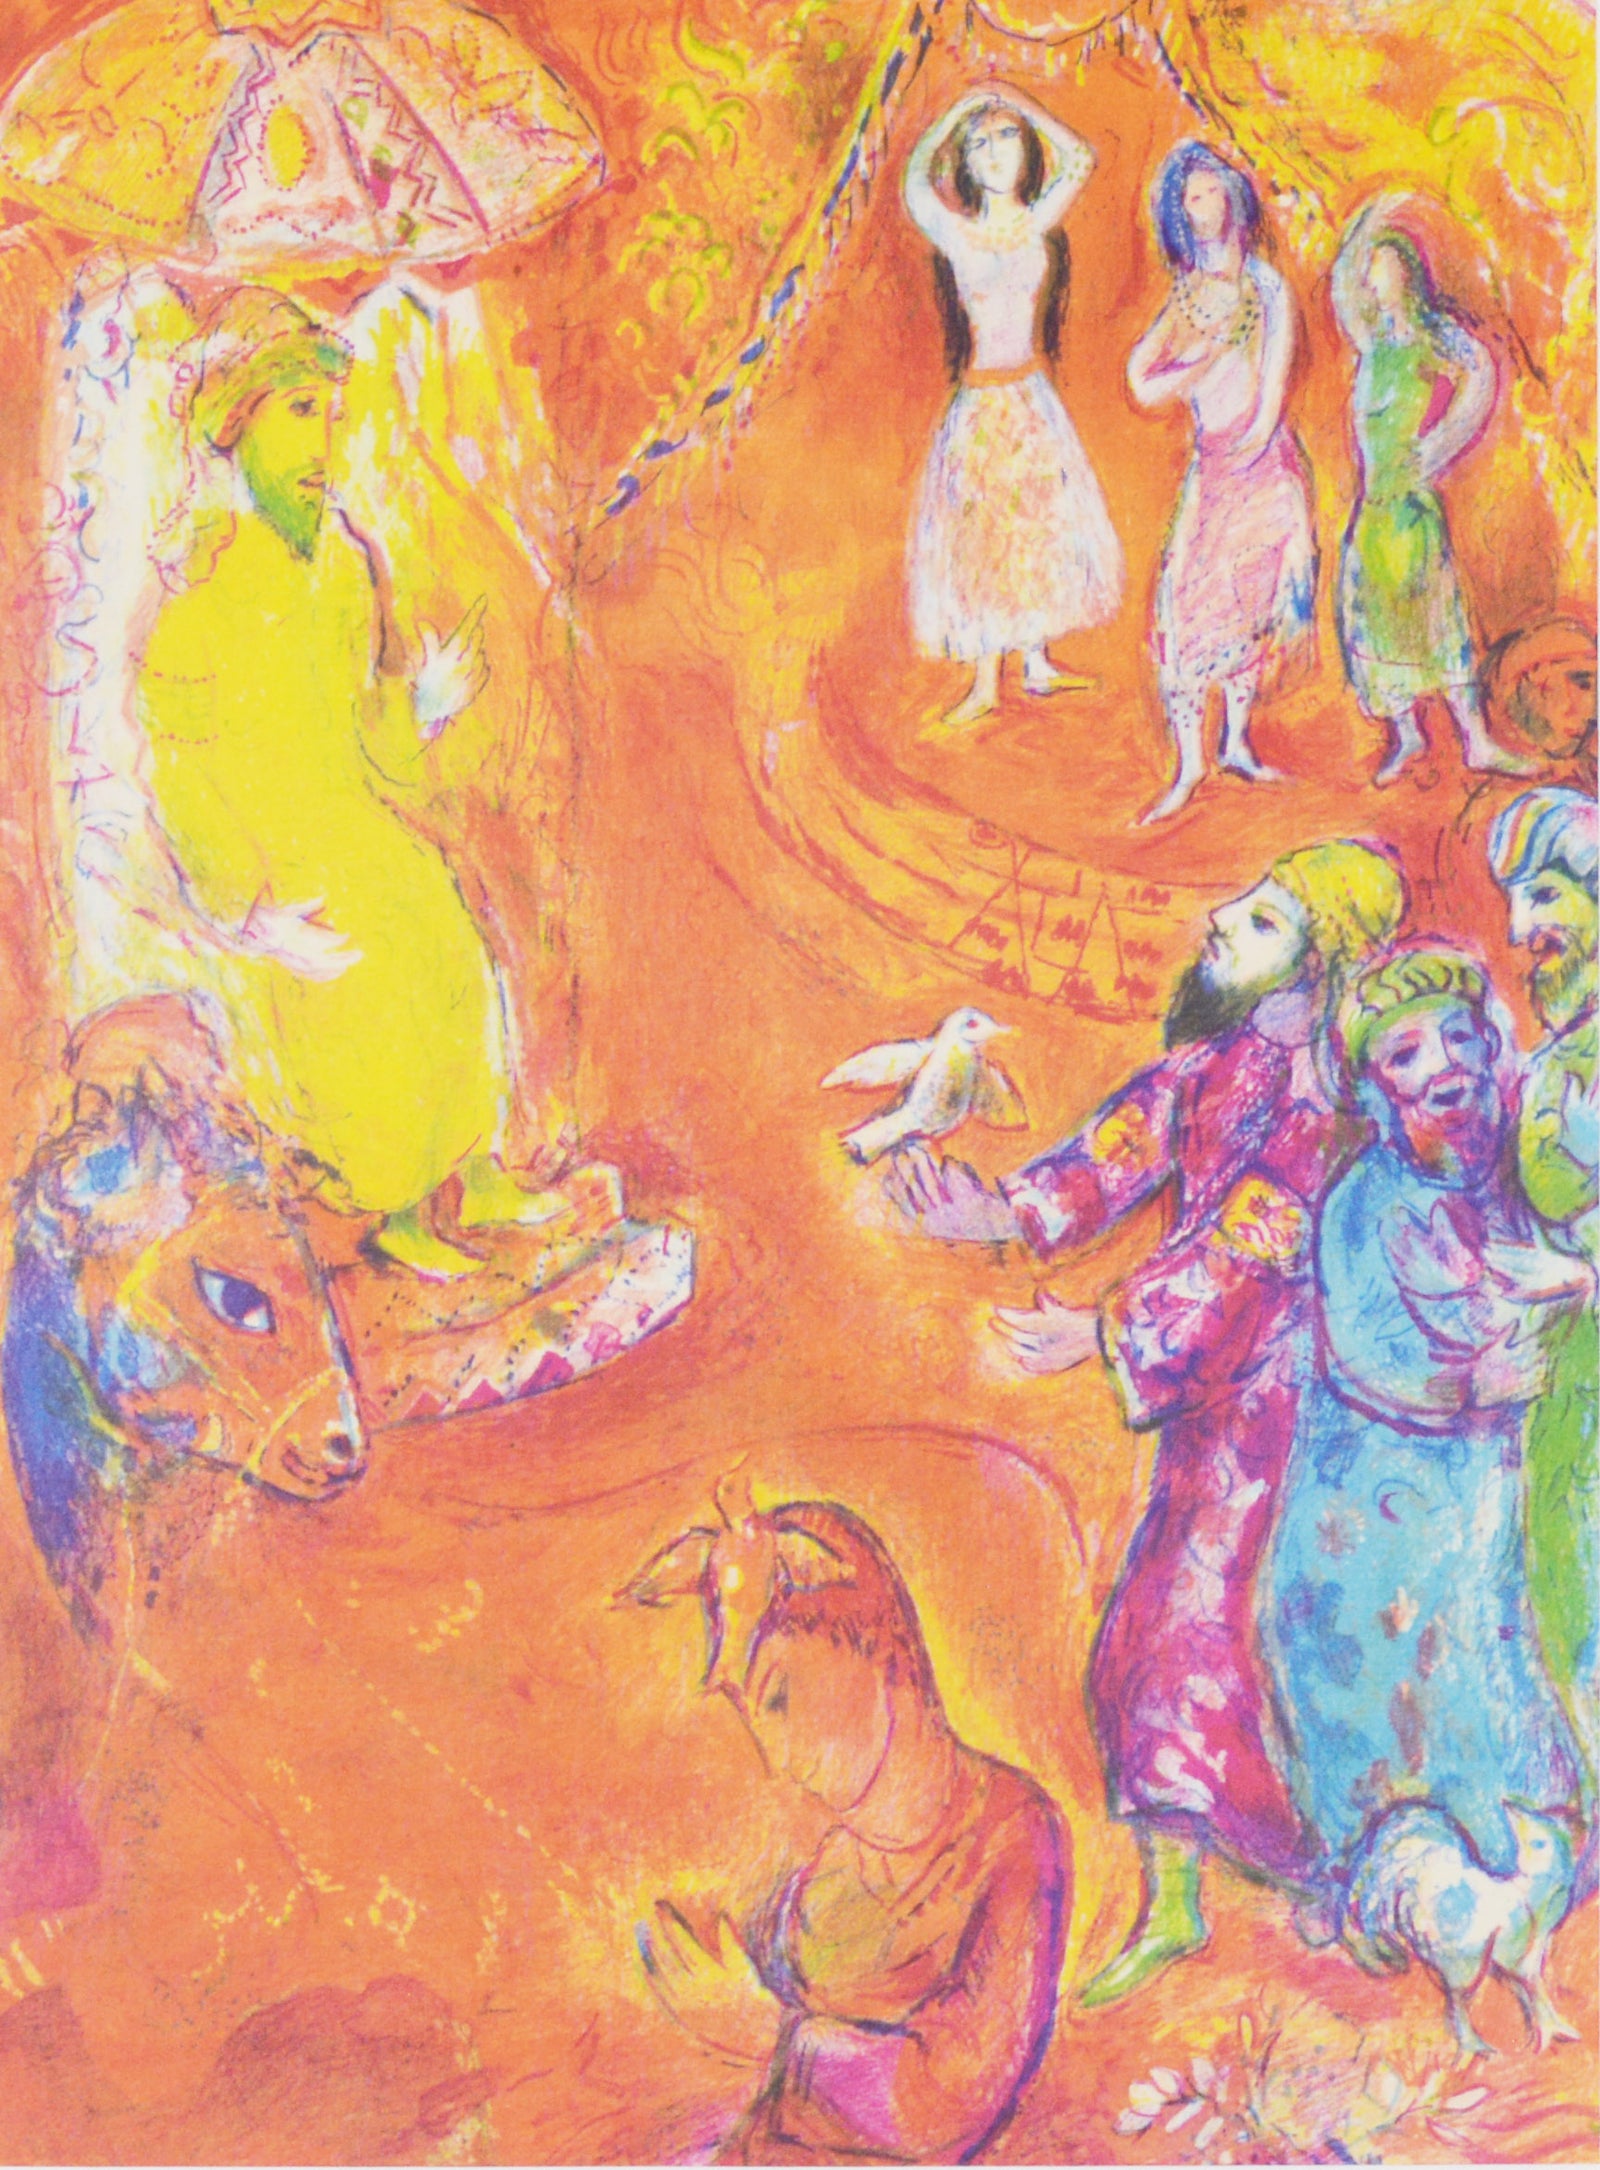 マルク シャガール 『黒檀の馬 Ⅰ【 アラビアンナイト 】』 絵画 1988年西ドイツで制作(復刻) 印刷版公式レプリカ – 版画専門店 OROCHI